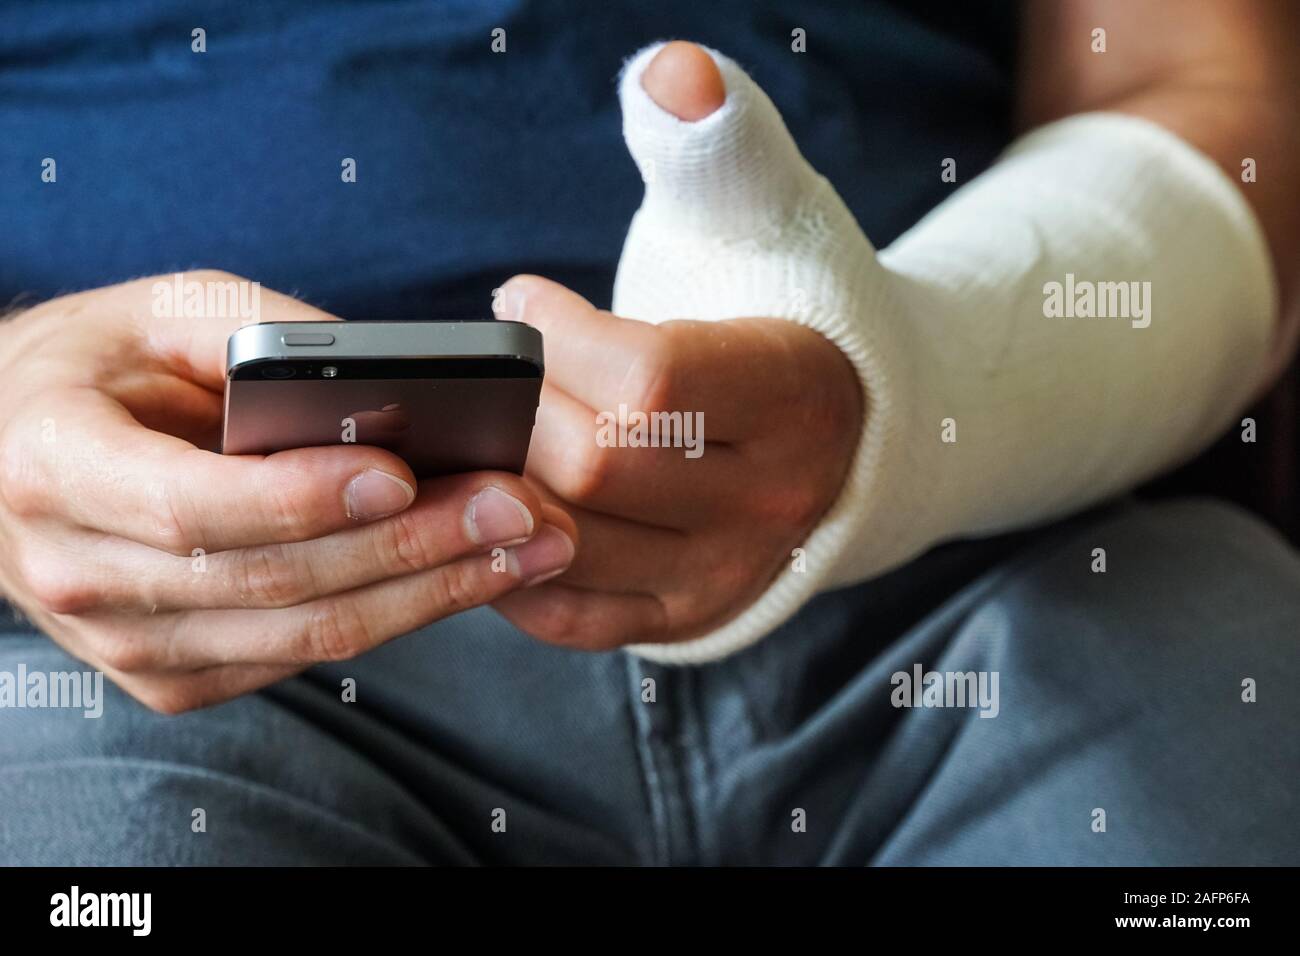 Man with plaster cast on broken hand, broken thumb,broken wrist using smartphone Stock Photo